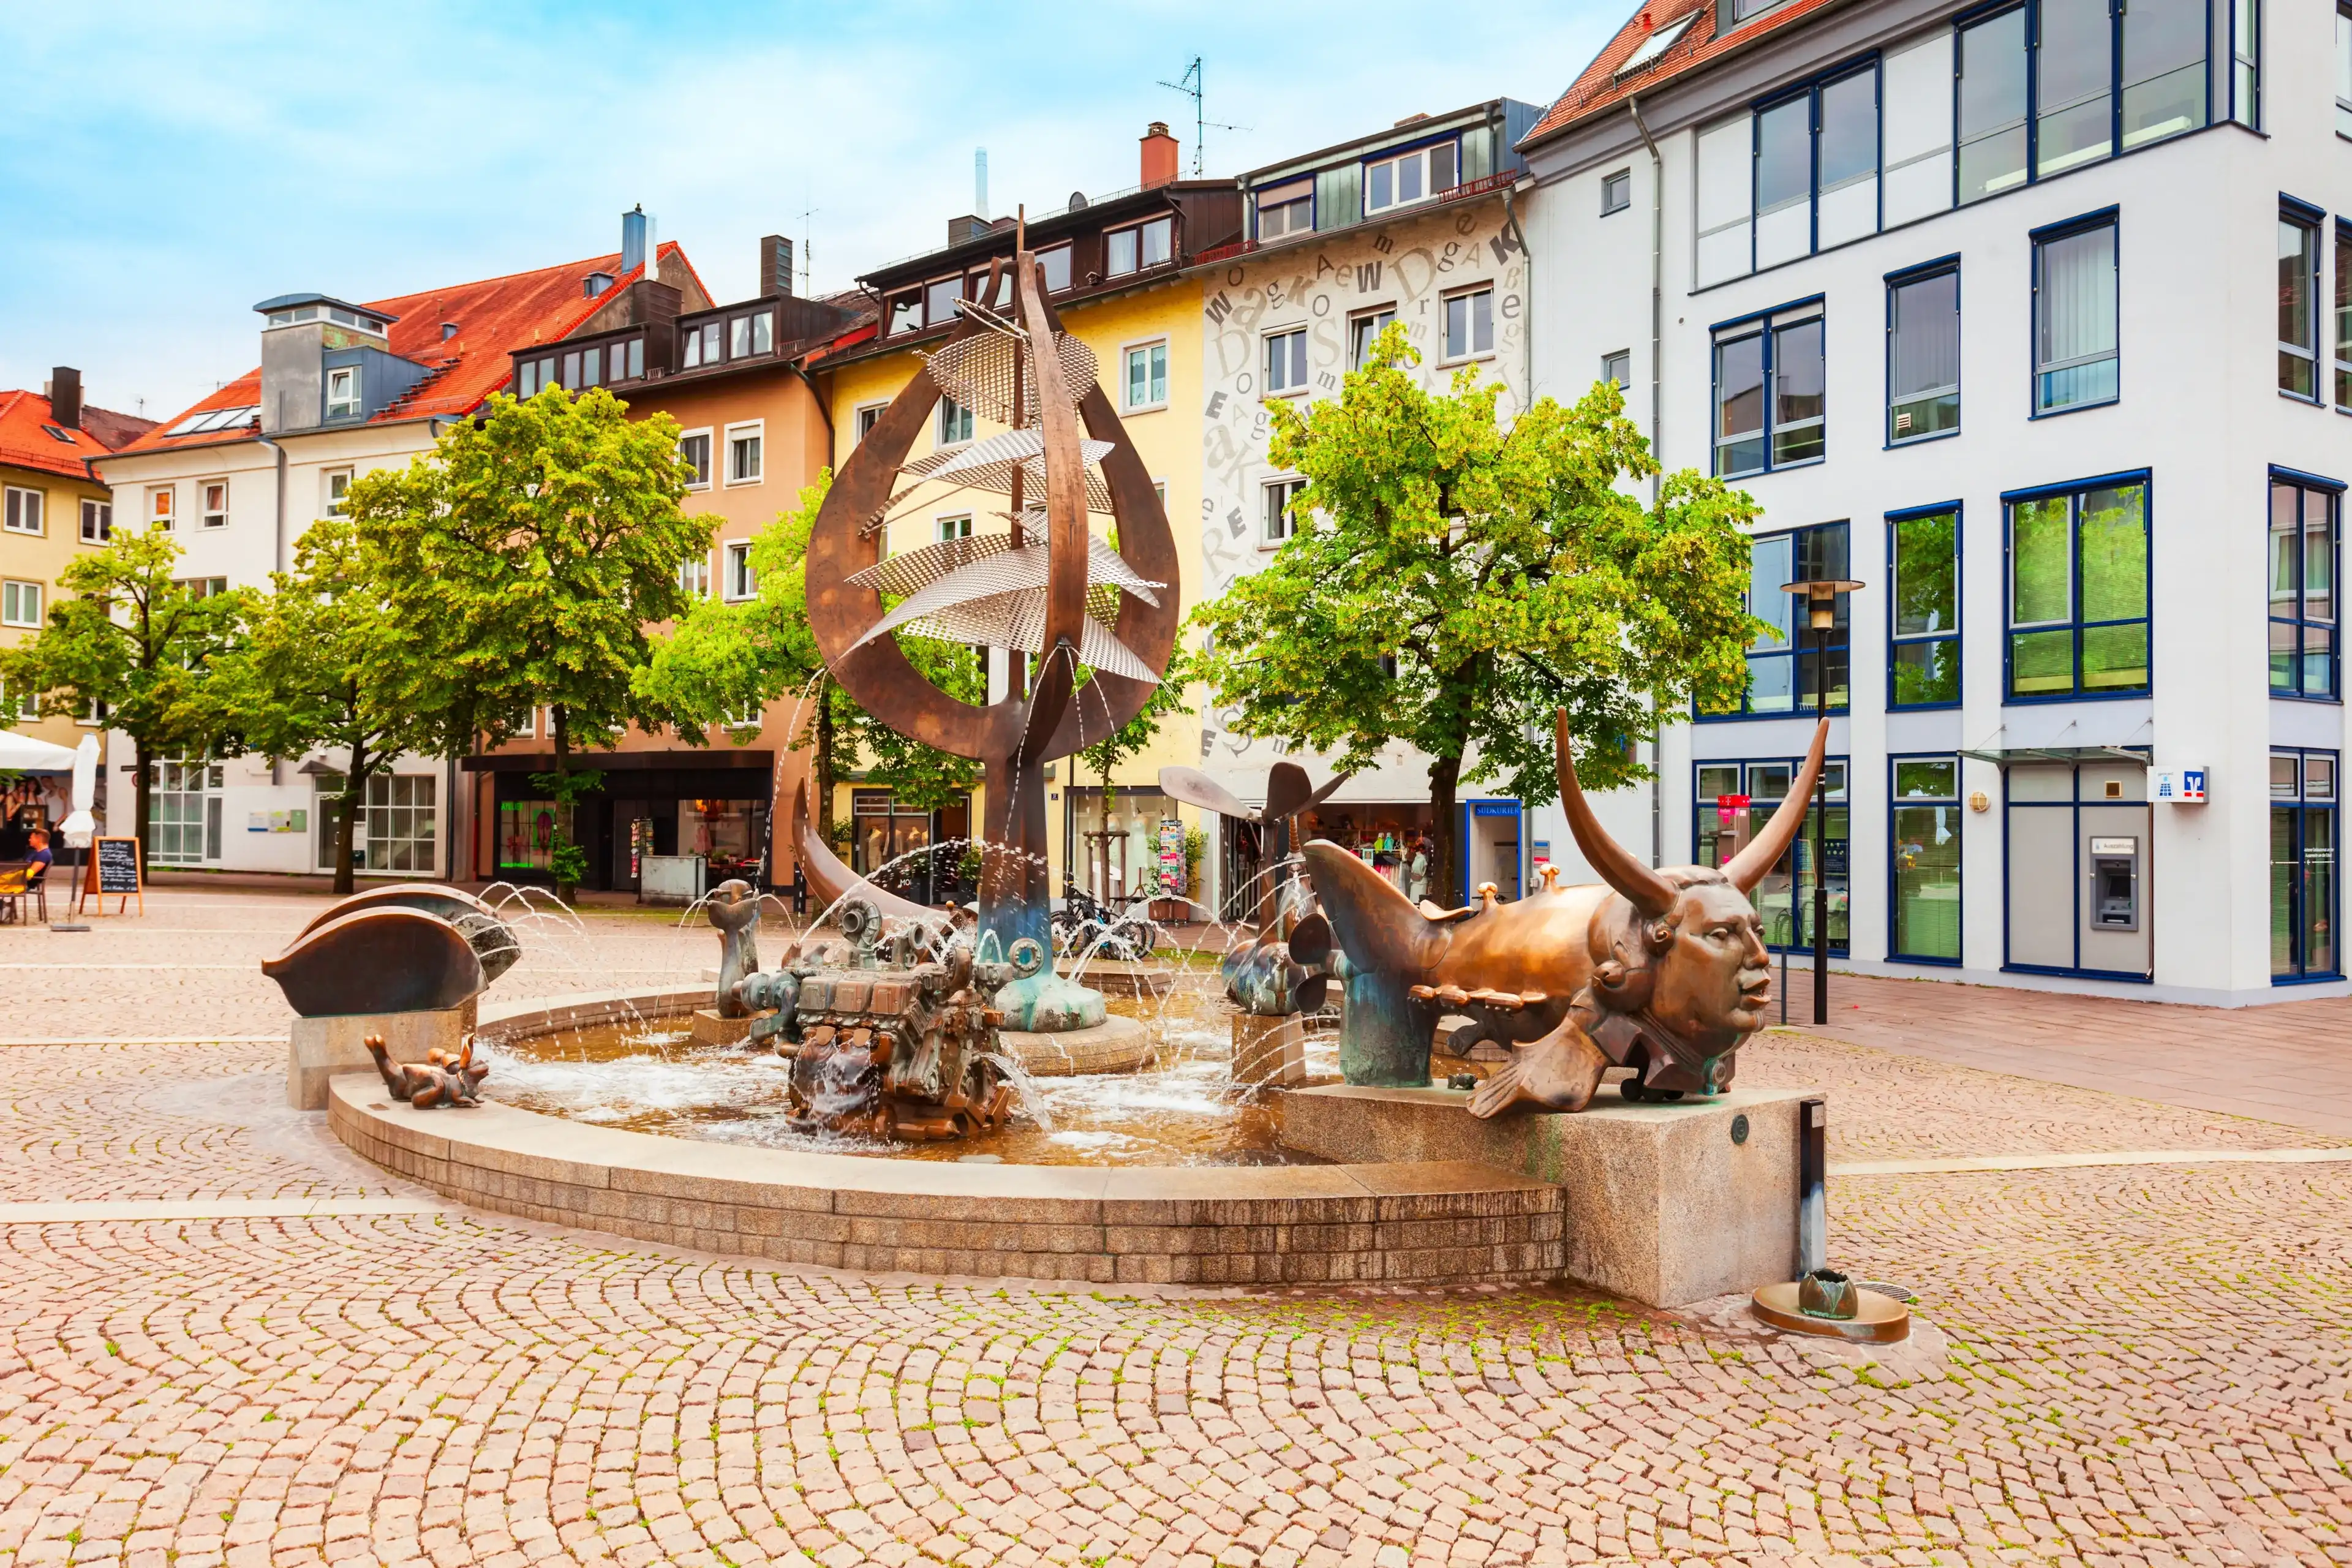 Best Friedrichshafen hotels. Cheap hotels in Friedrichshafen, Germany